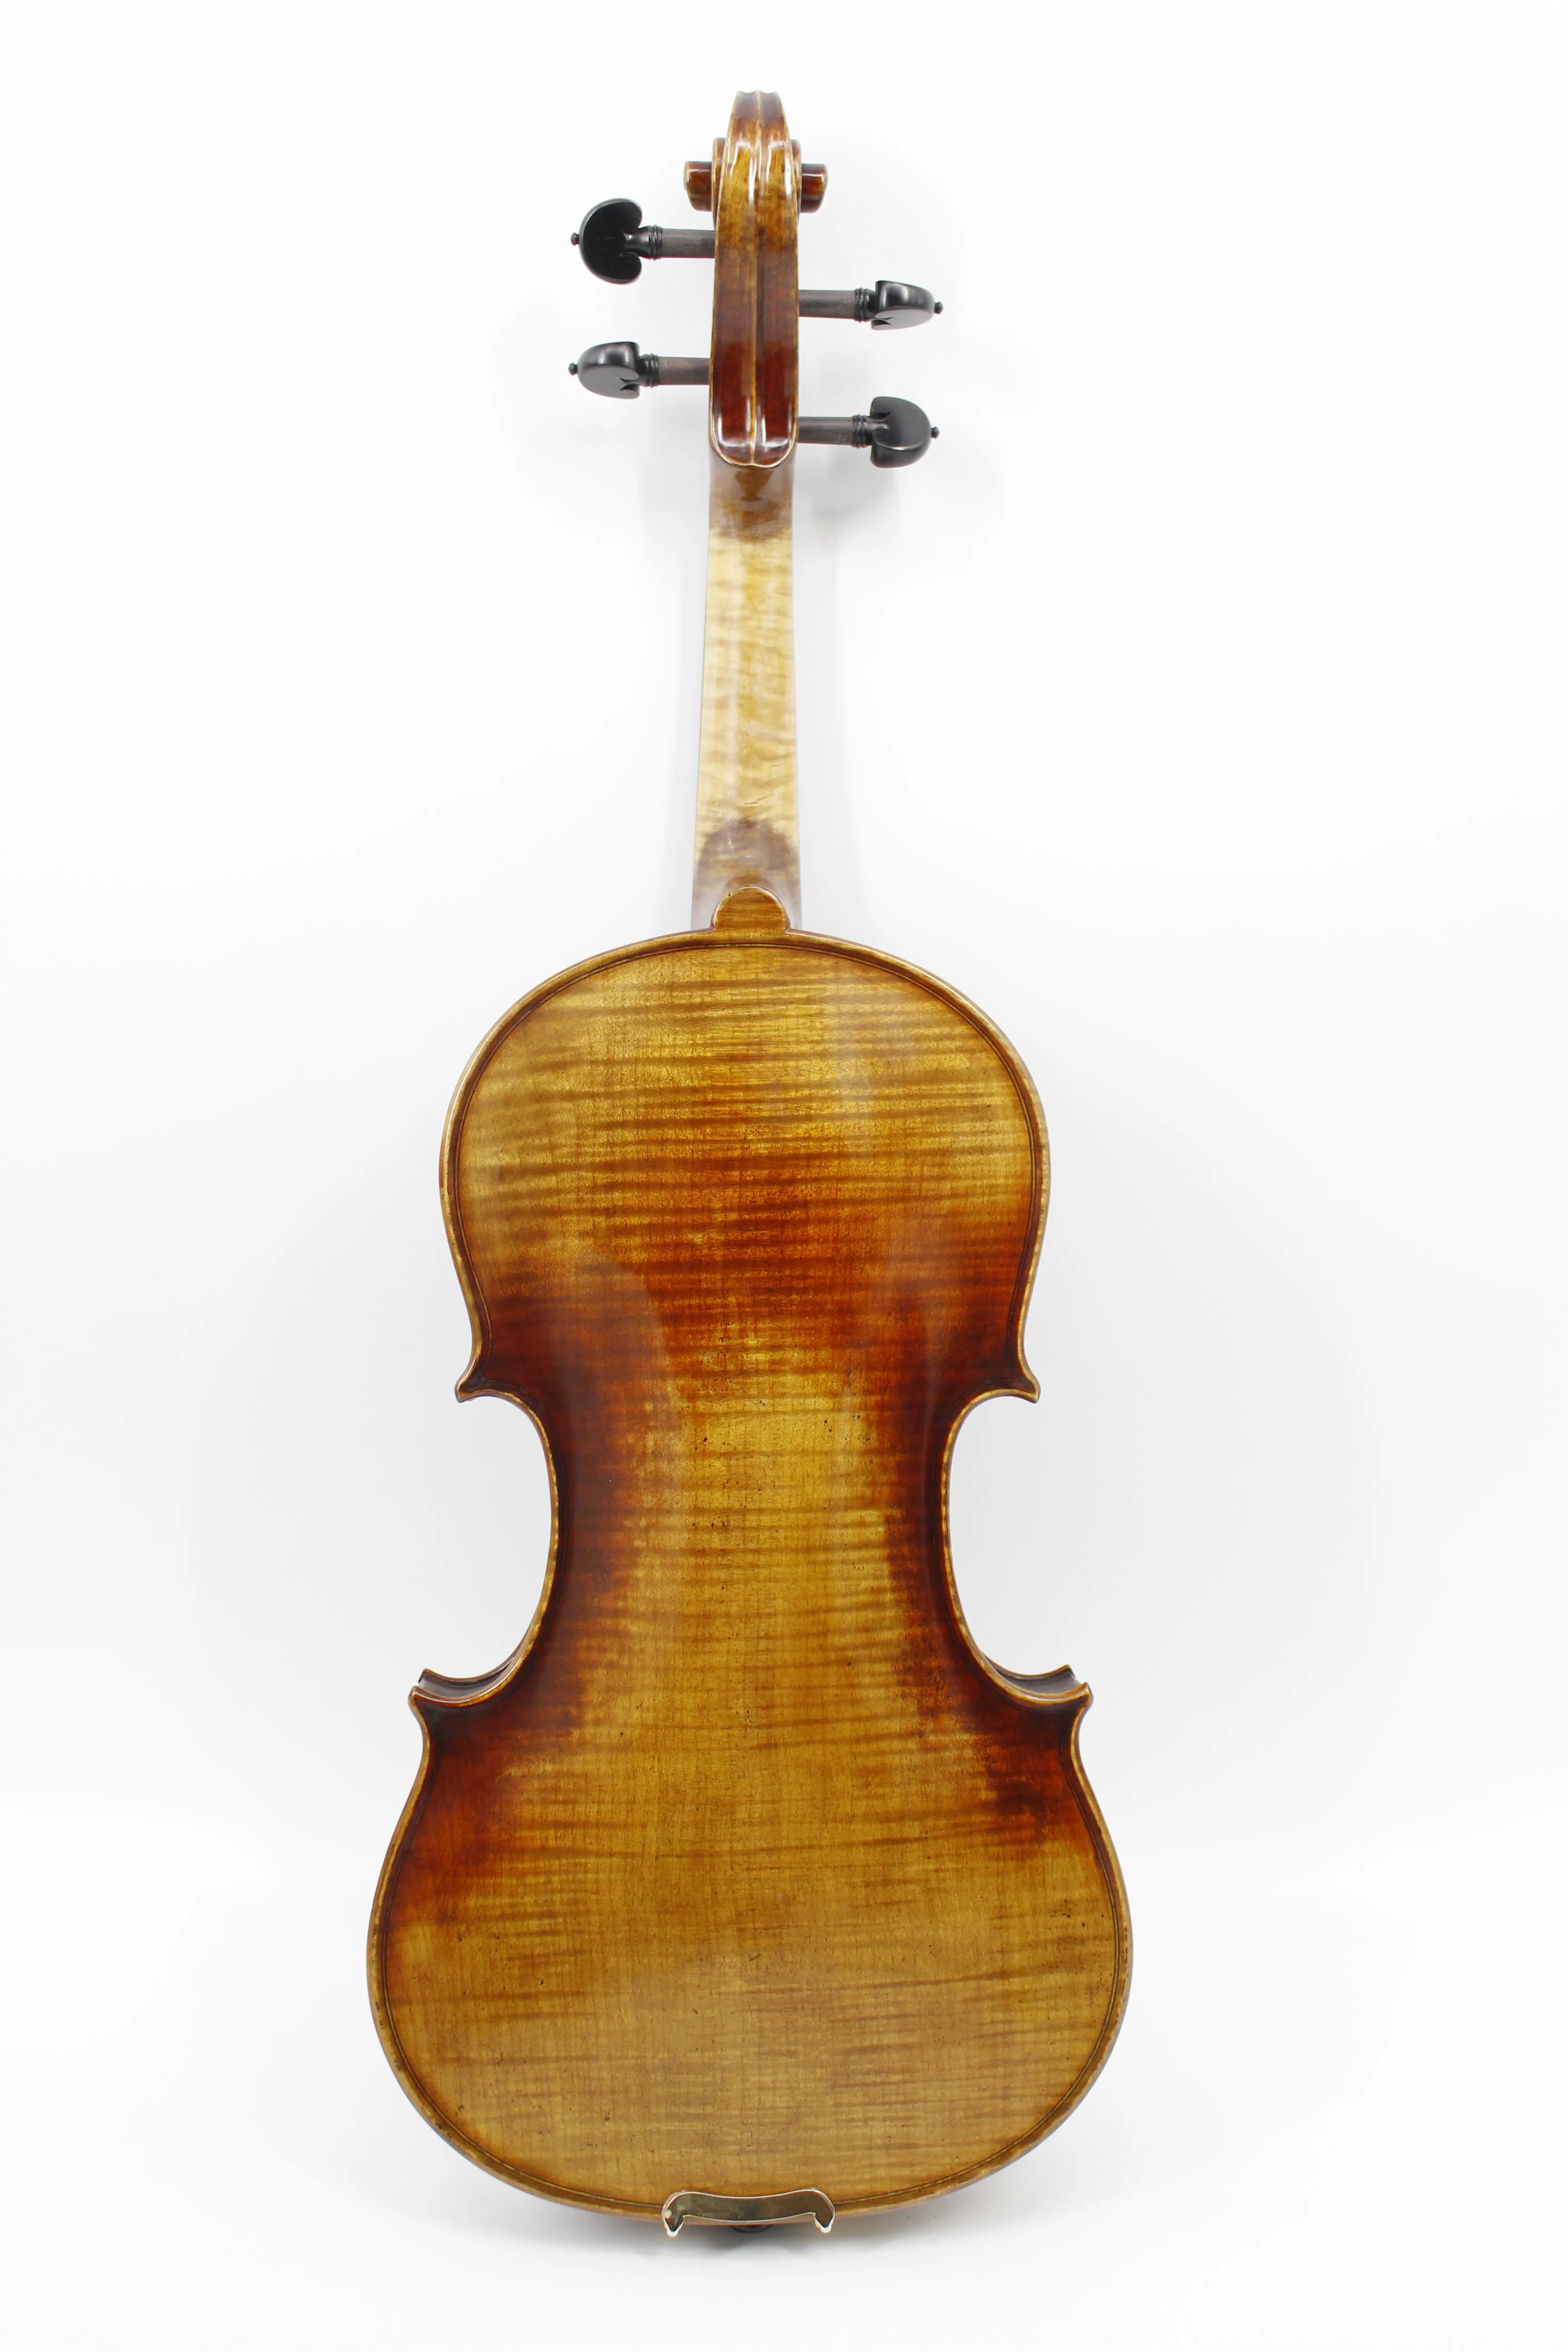 Tongling Handmade Madeira Europeia High Grade Chama Estilo Antigo Violino Violino